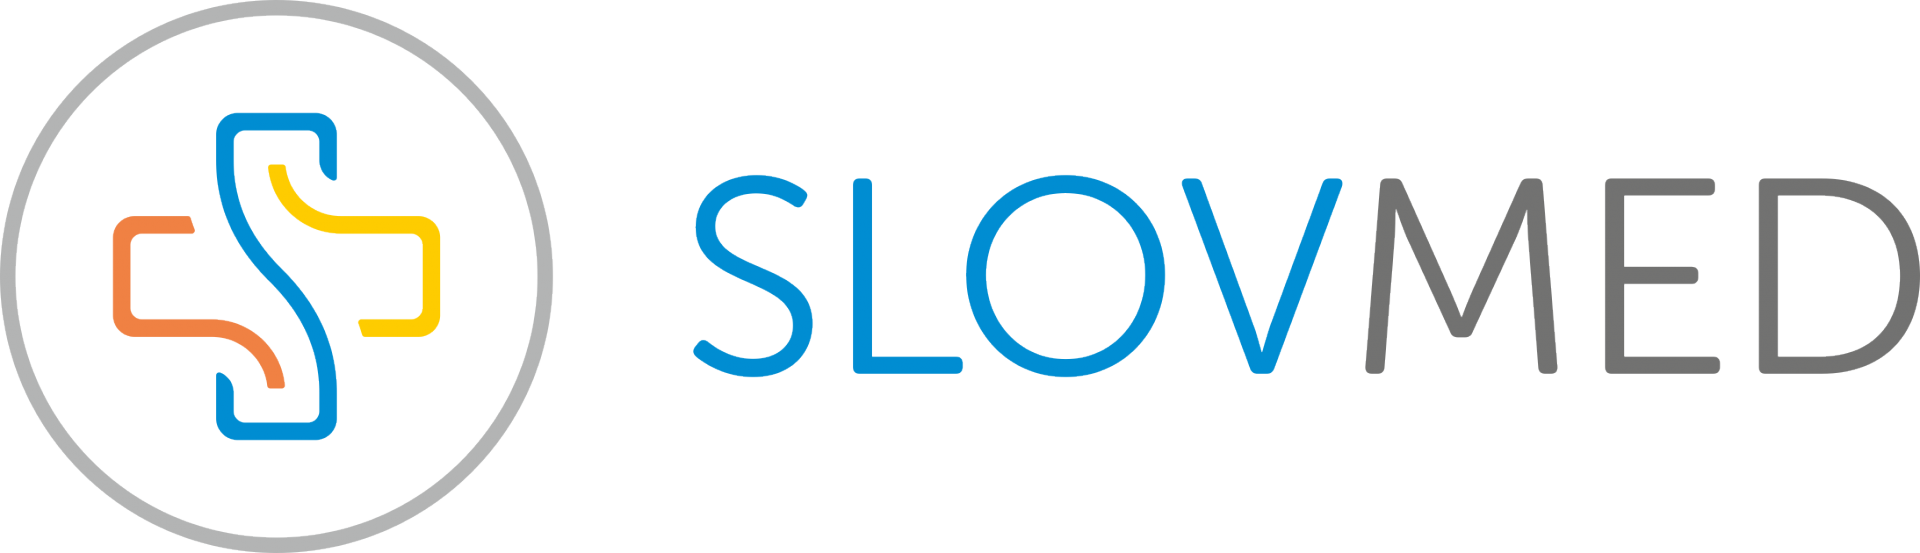 Slovmed Logo